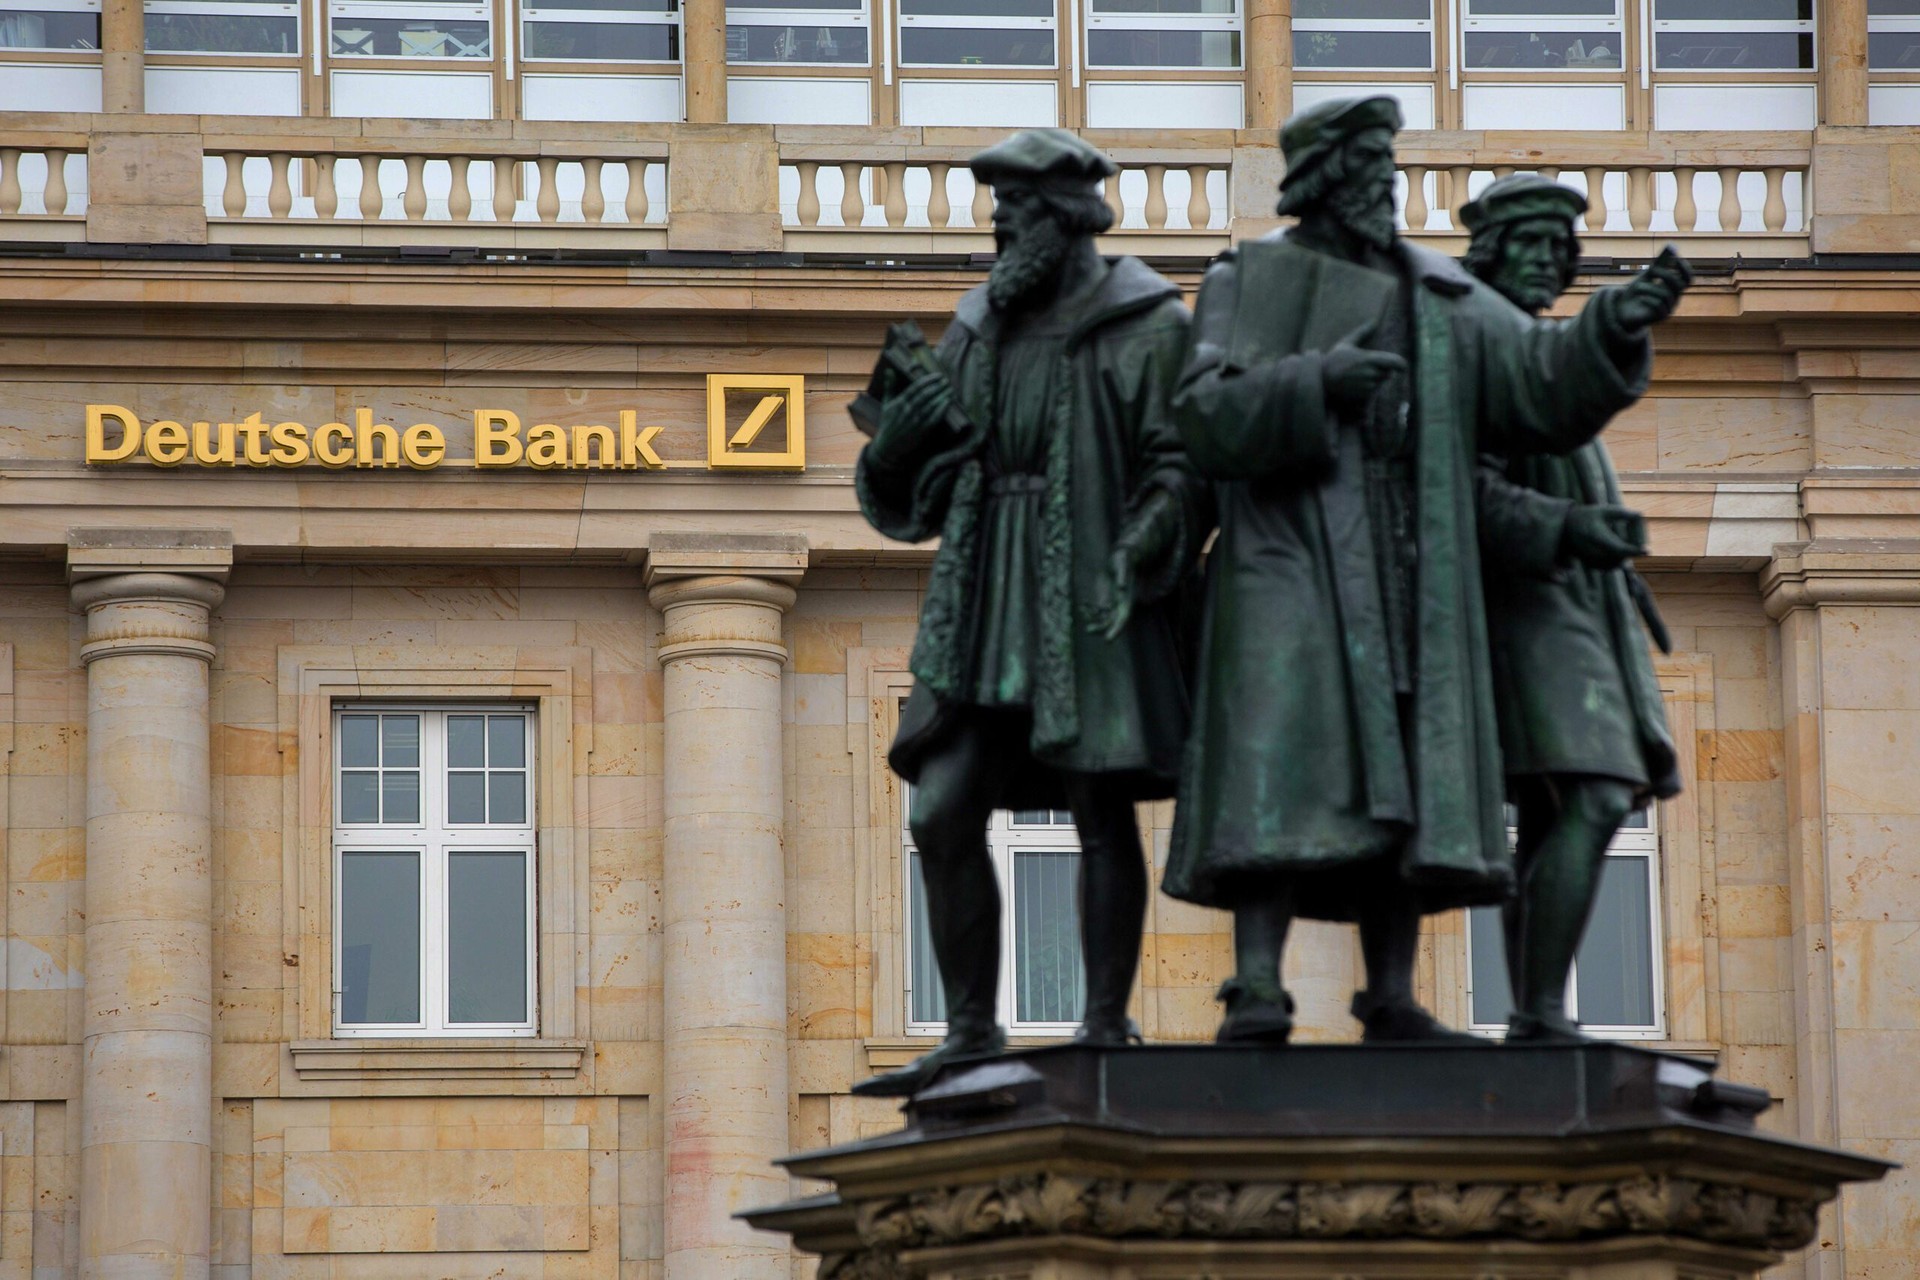 Marketing Strategy of Deutsche Bank - Deutsche Bank Statue, Source: CNBC